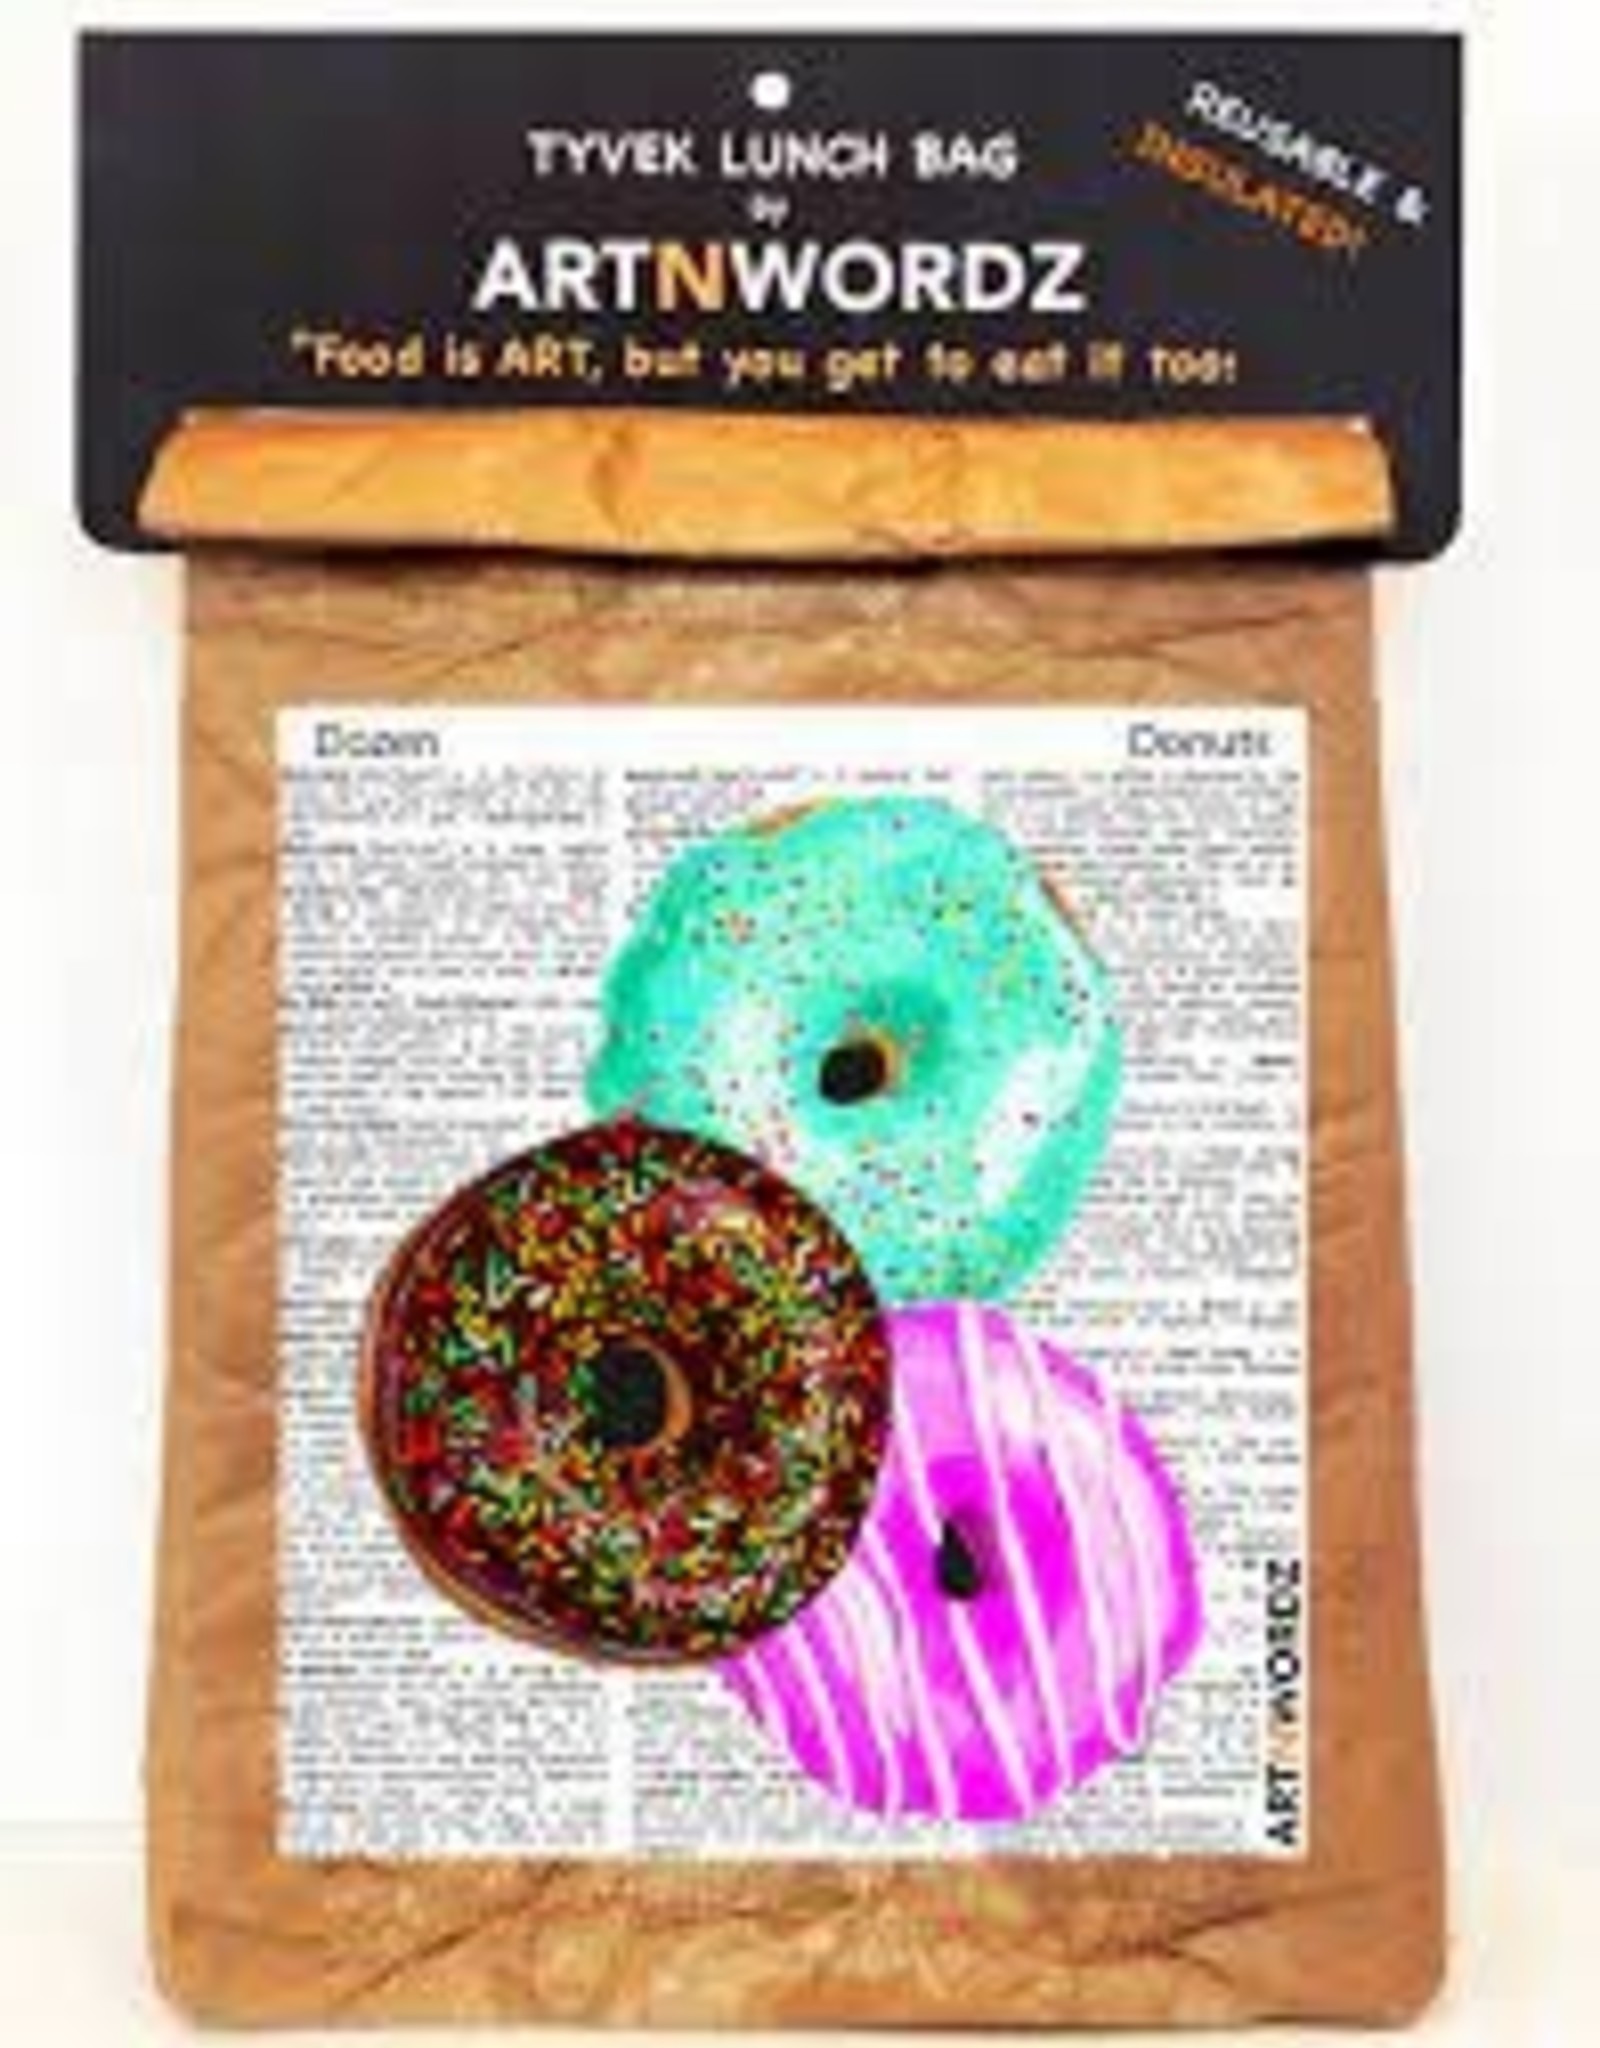 Kitchen Artnwordz - Donuts Lunch Bag